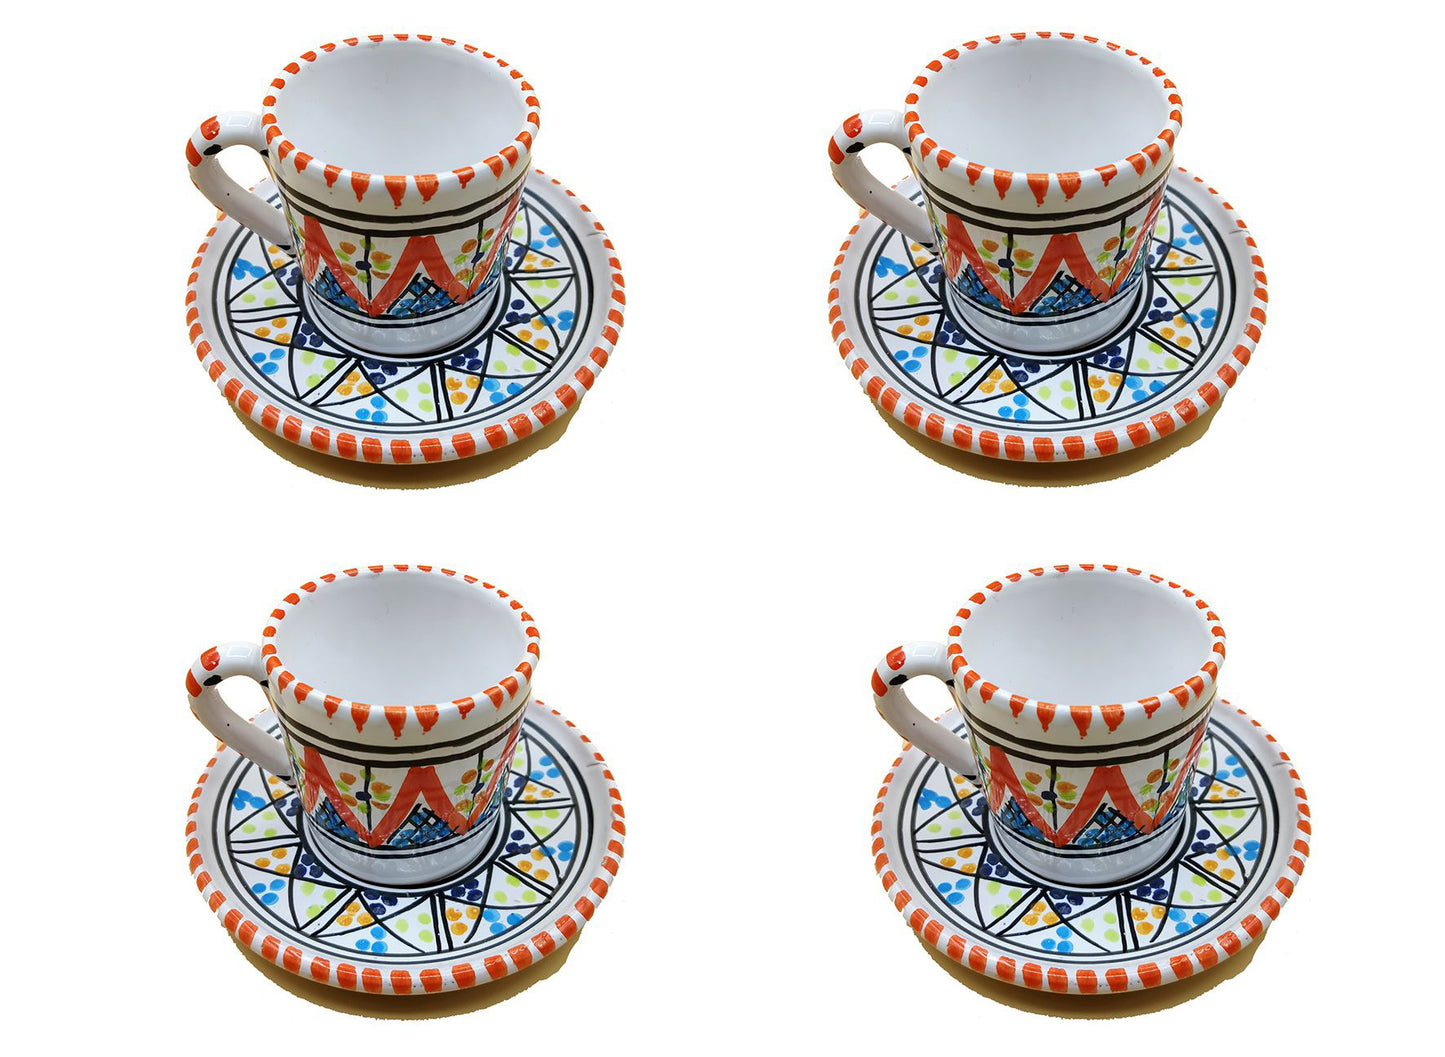 Servizio Tazzine da 4 Caffe Ceramica Dipinta a Mano Tunisina Marocchina 1211200920